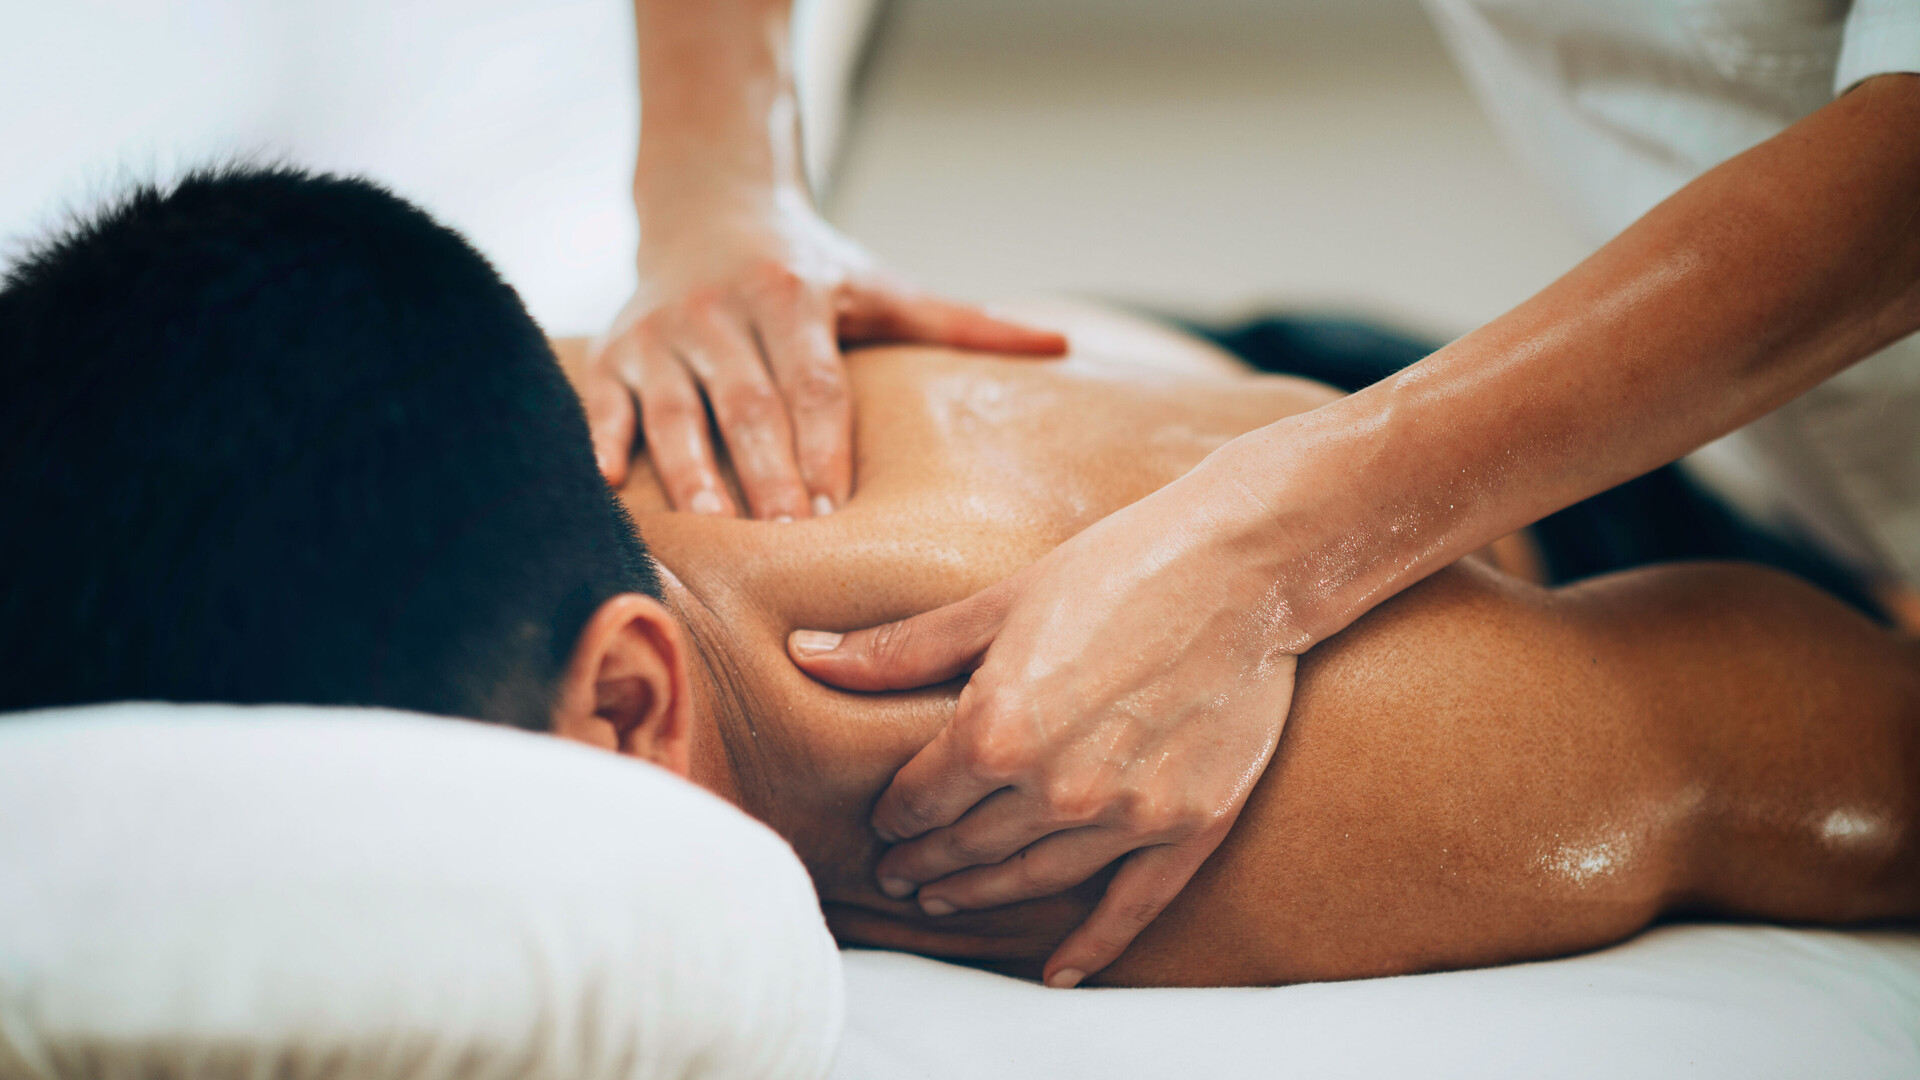 Eine liegende Person erhält zur Lockerung der Muskeln und Gelenke eine Massage.